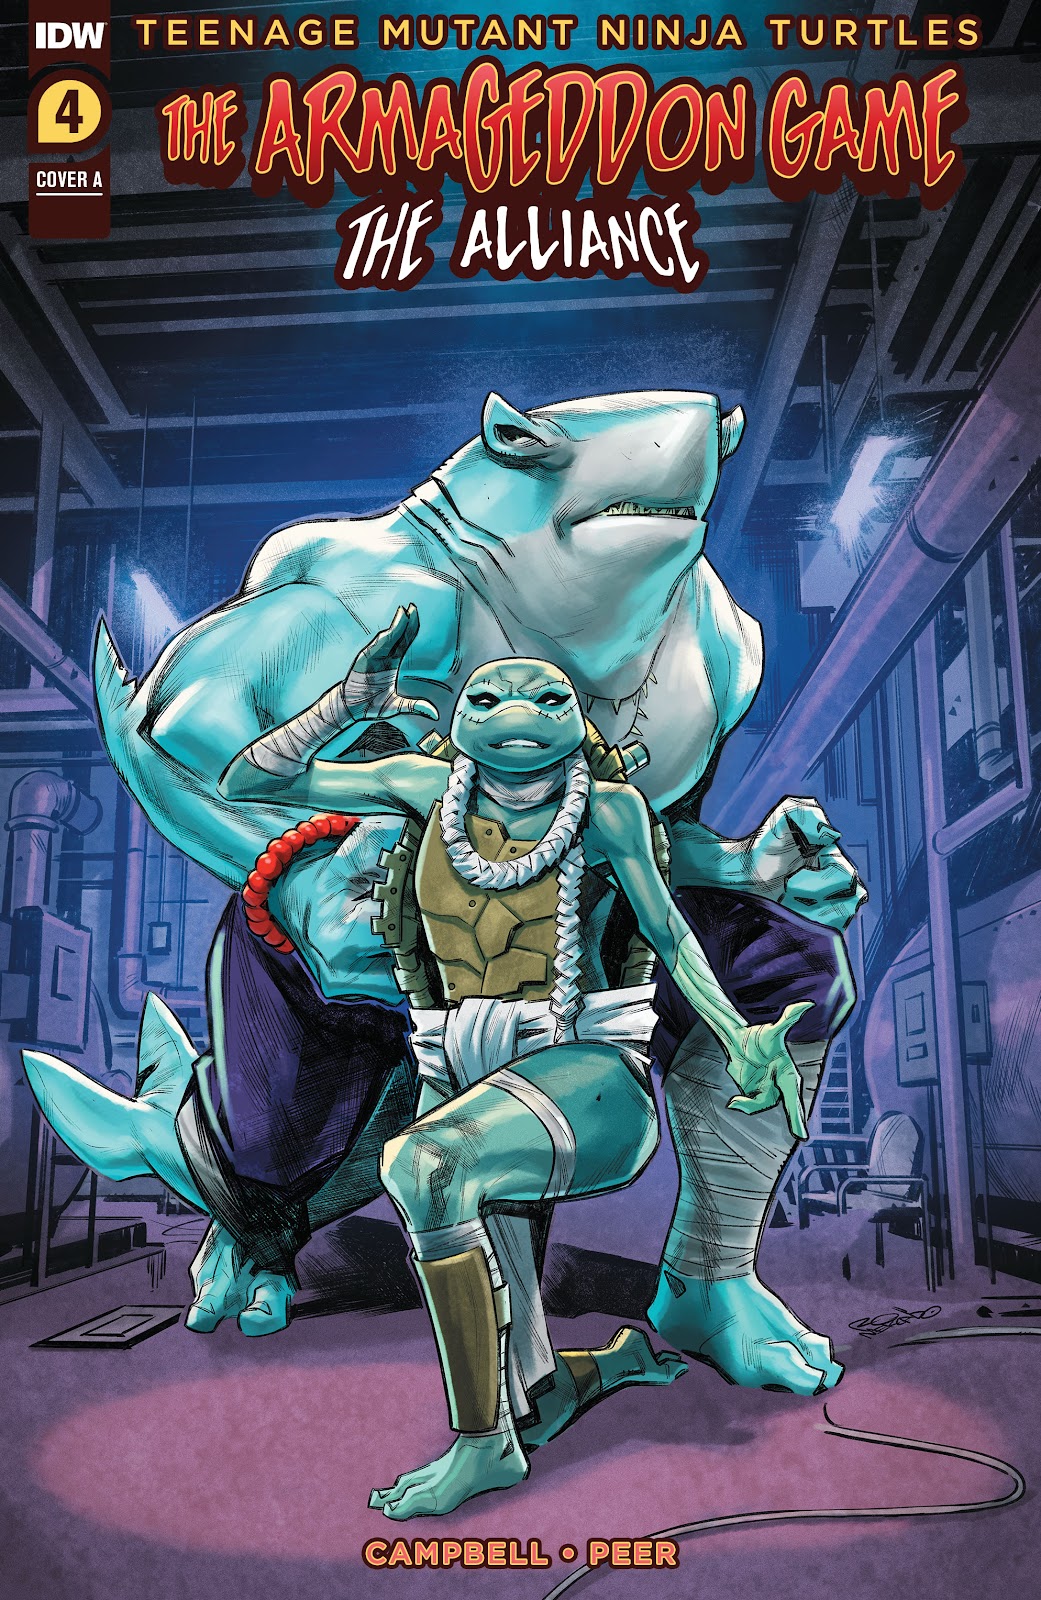 Teenage Mutant Ninja Turtles: The Armageddon Game - The Alliance issue 4 - Page 1